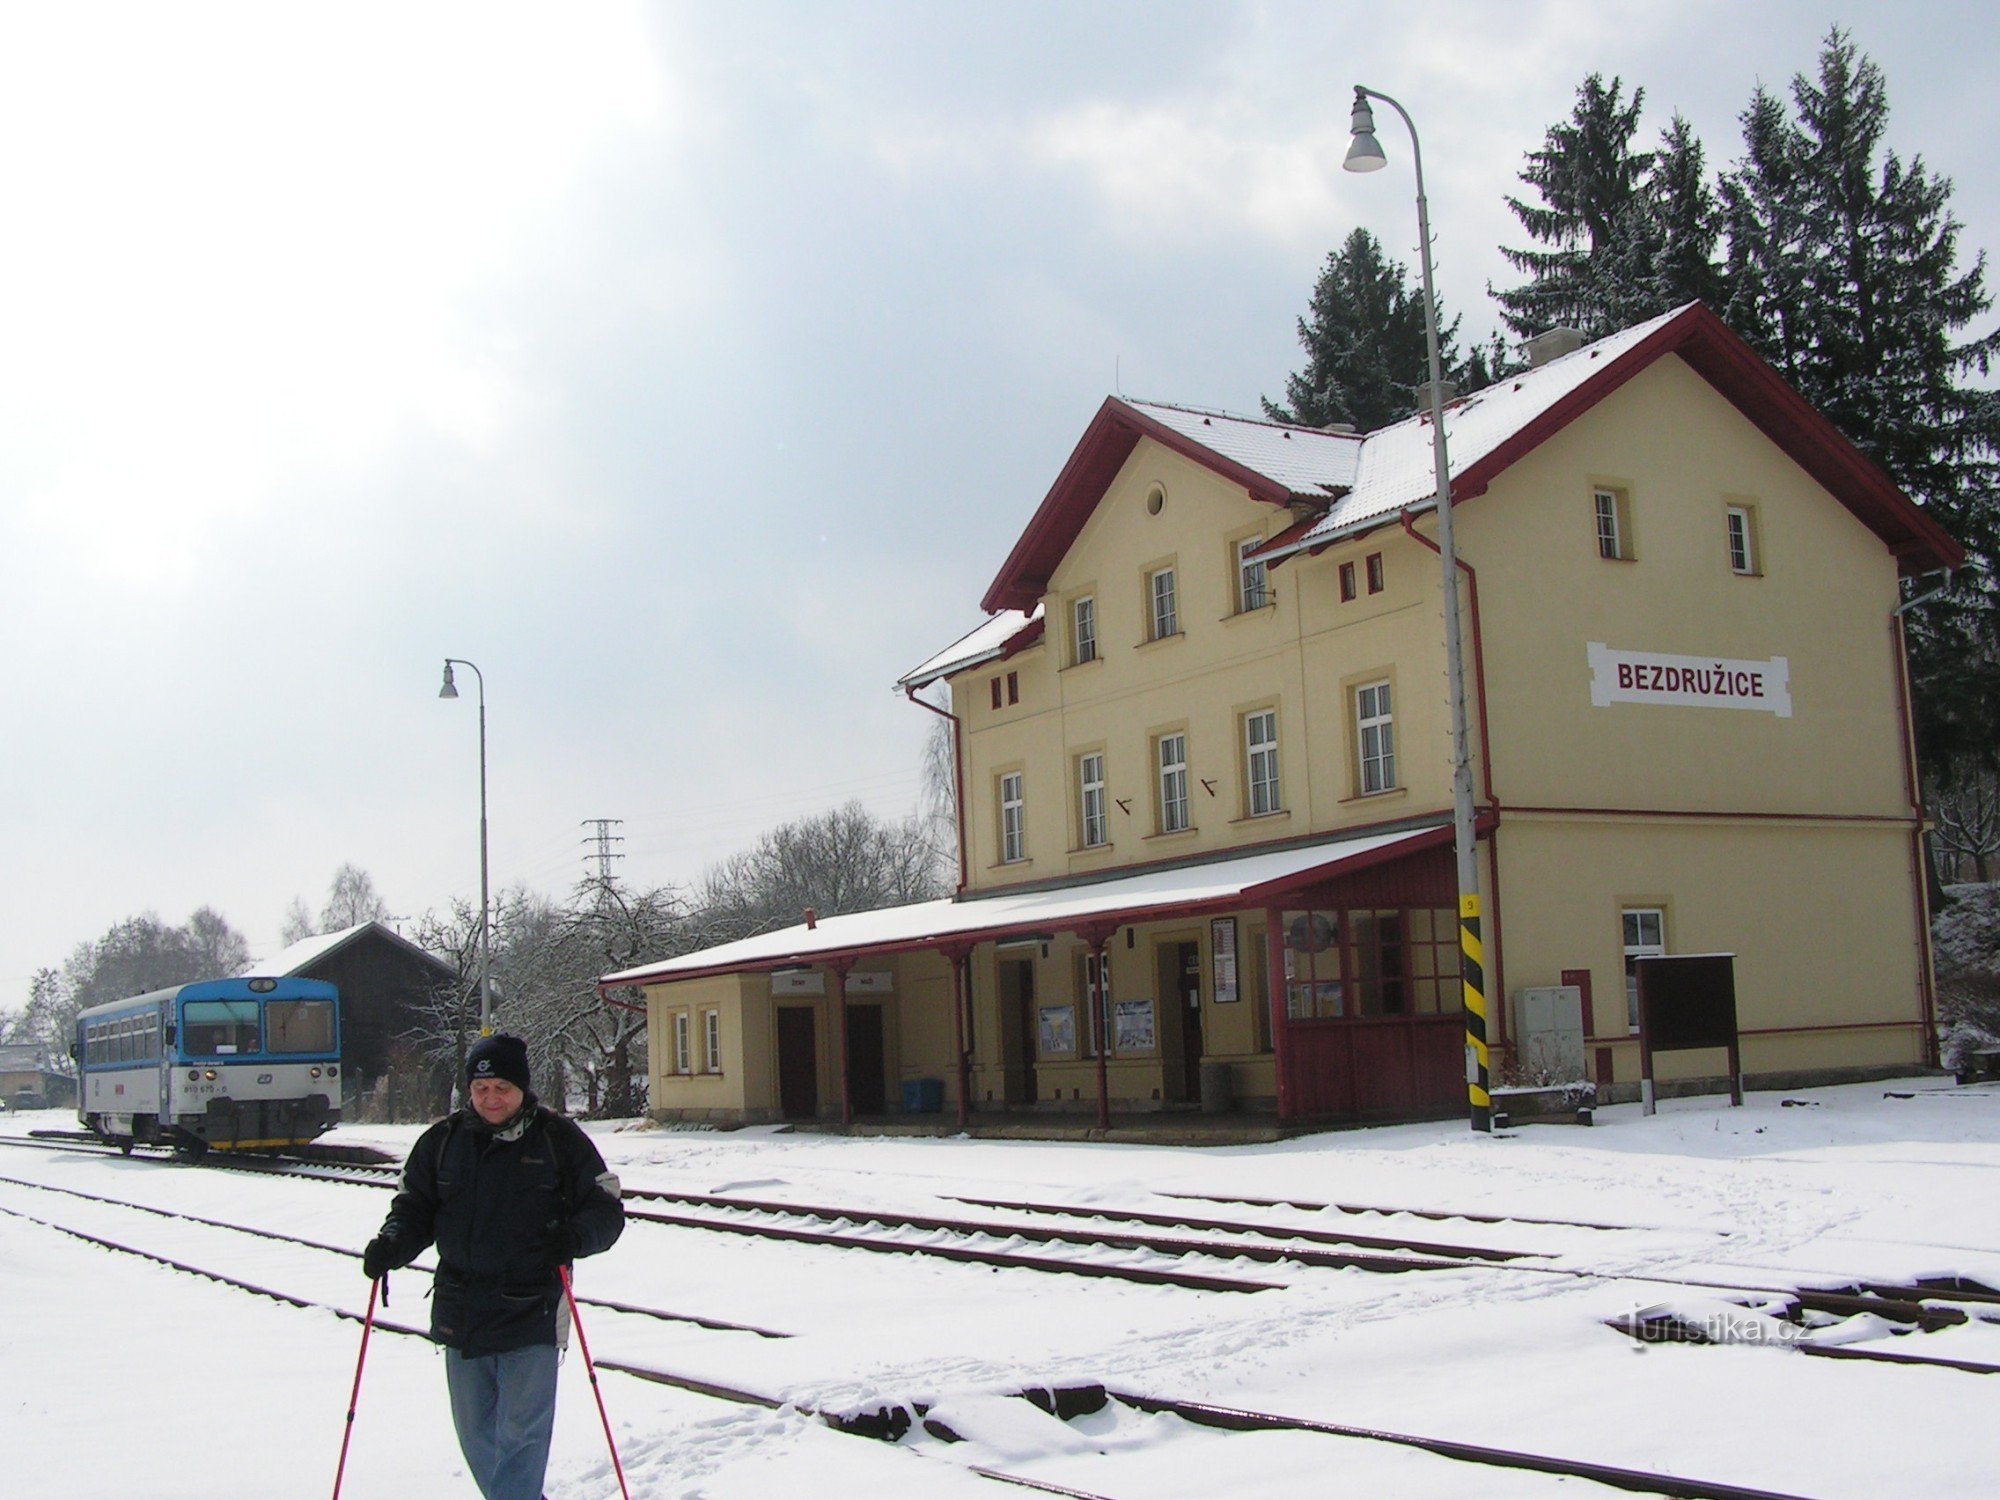 Station in Bezdružice